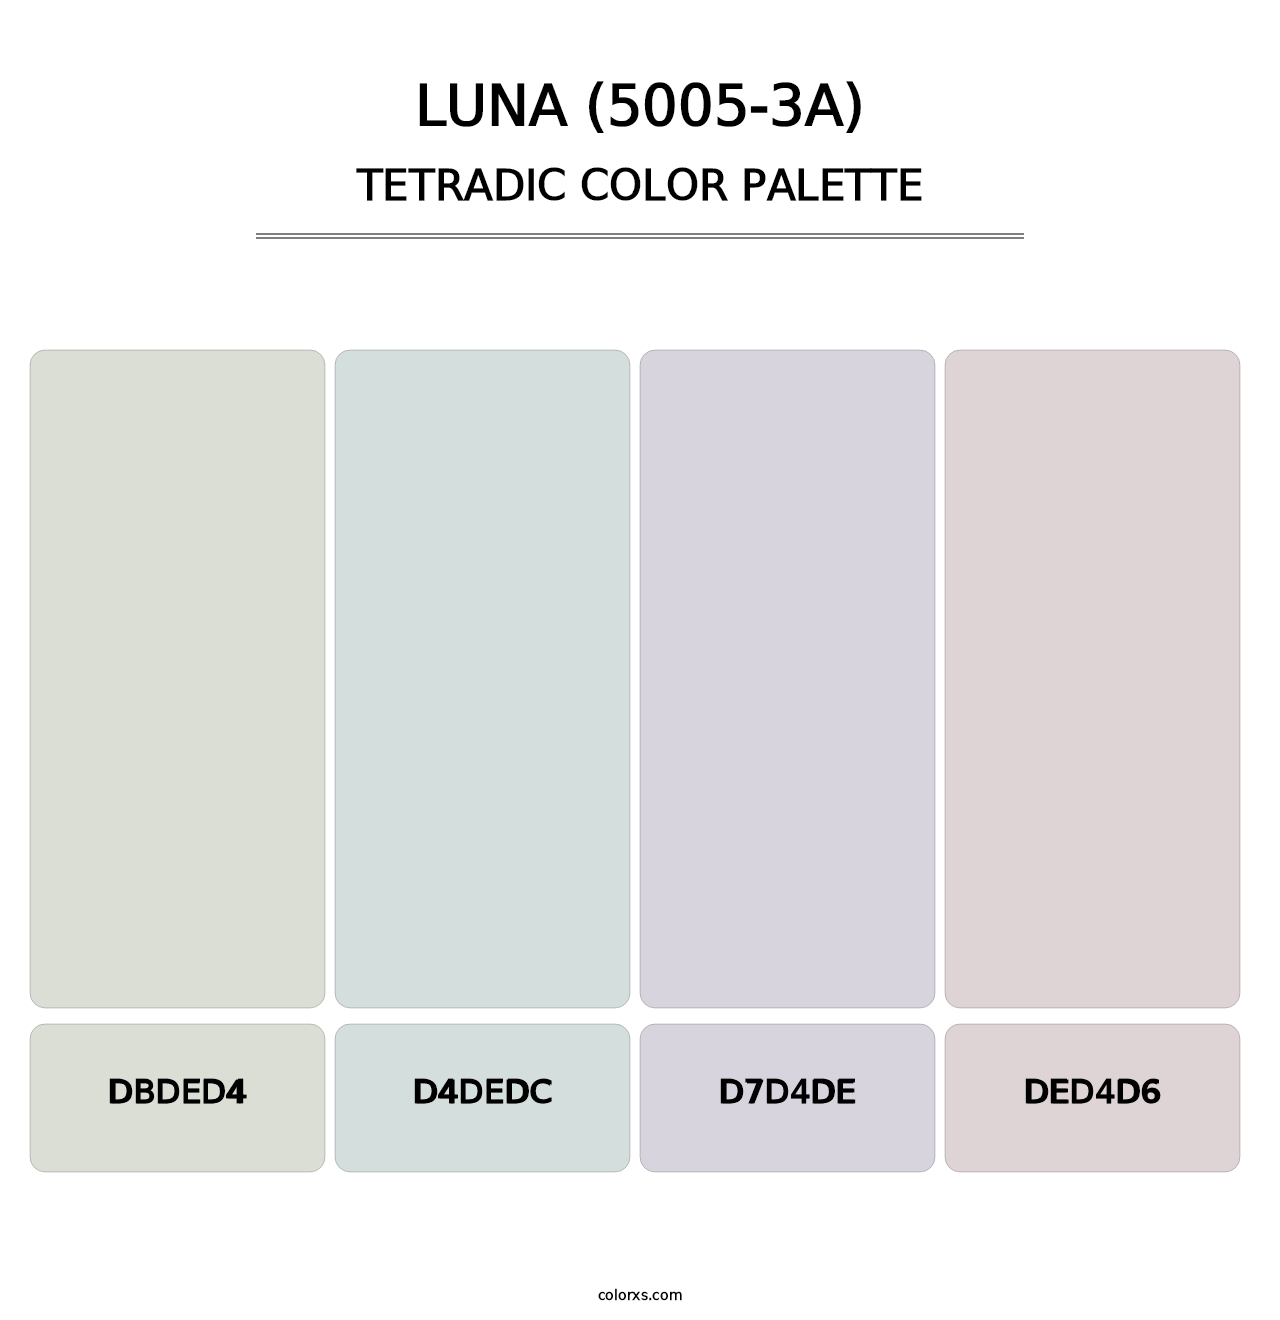 Luna (5005-3A) - Tetradic Color Palette